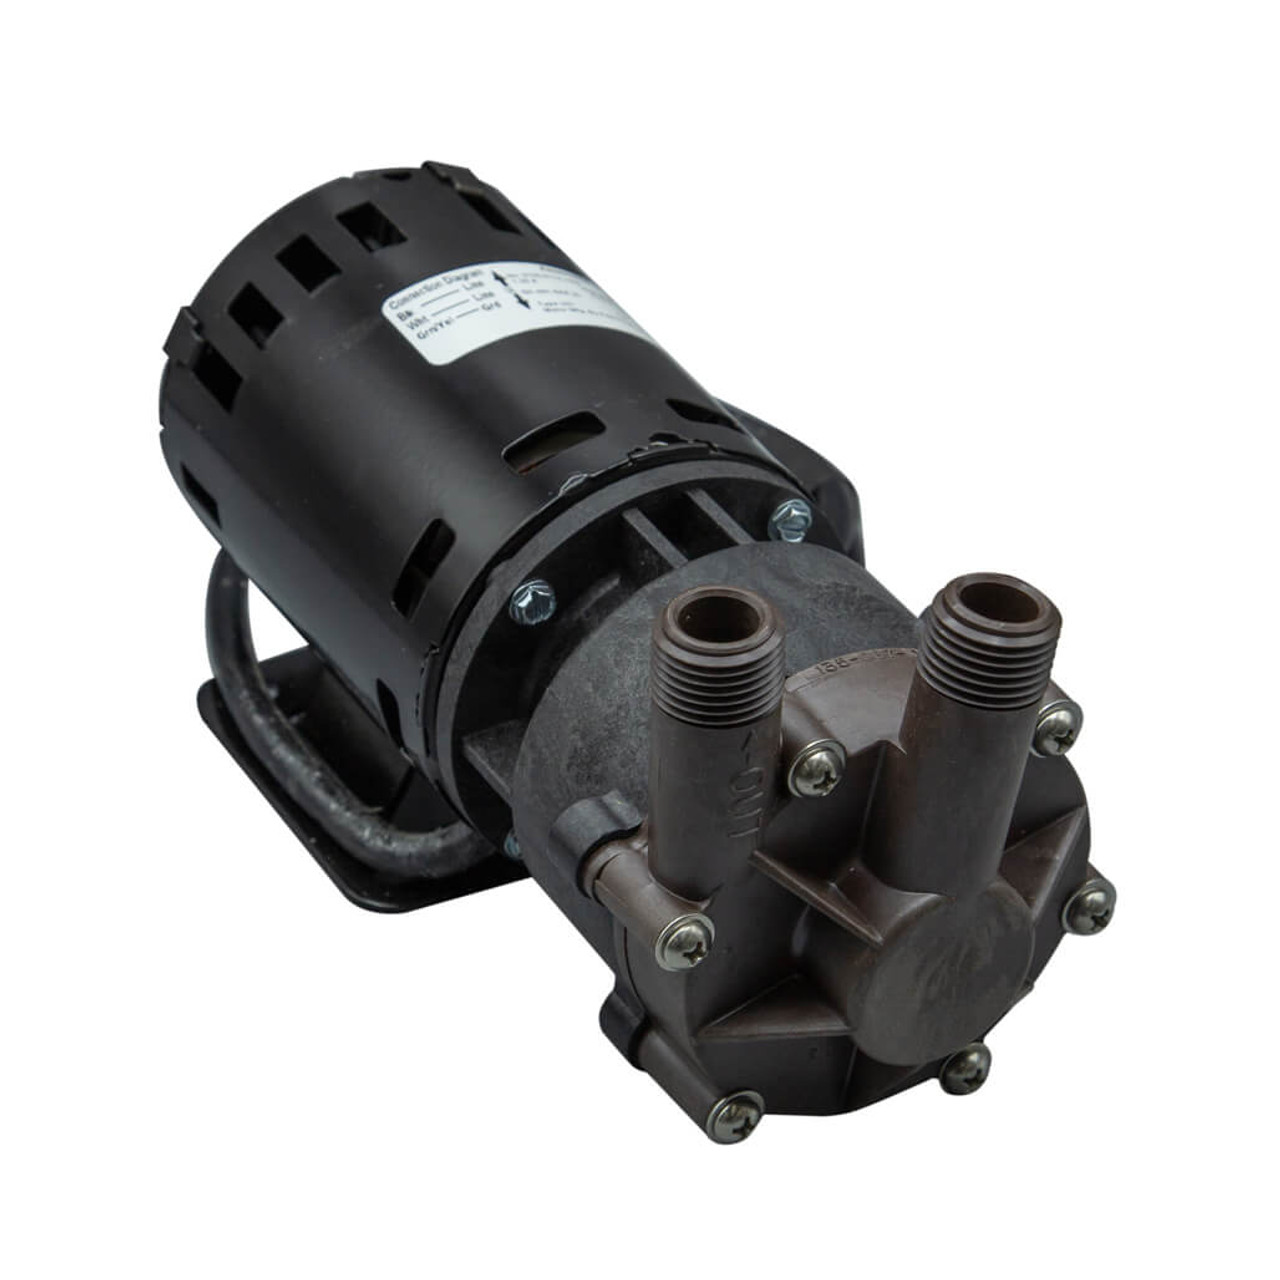 March Pumps - MDK-MT3 115V, Open Air Magnetic Drive Pump - 0135-0036-0400